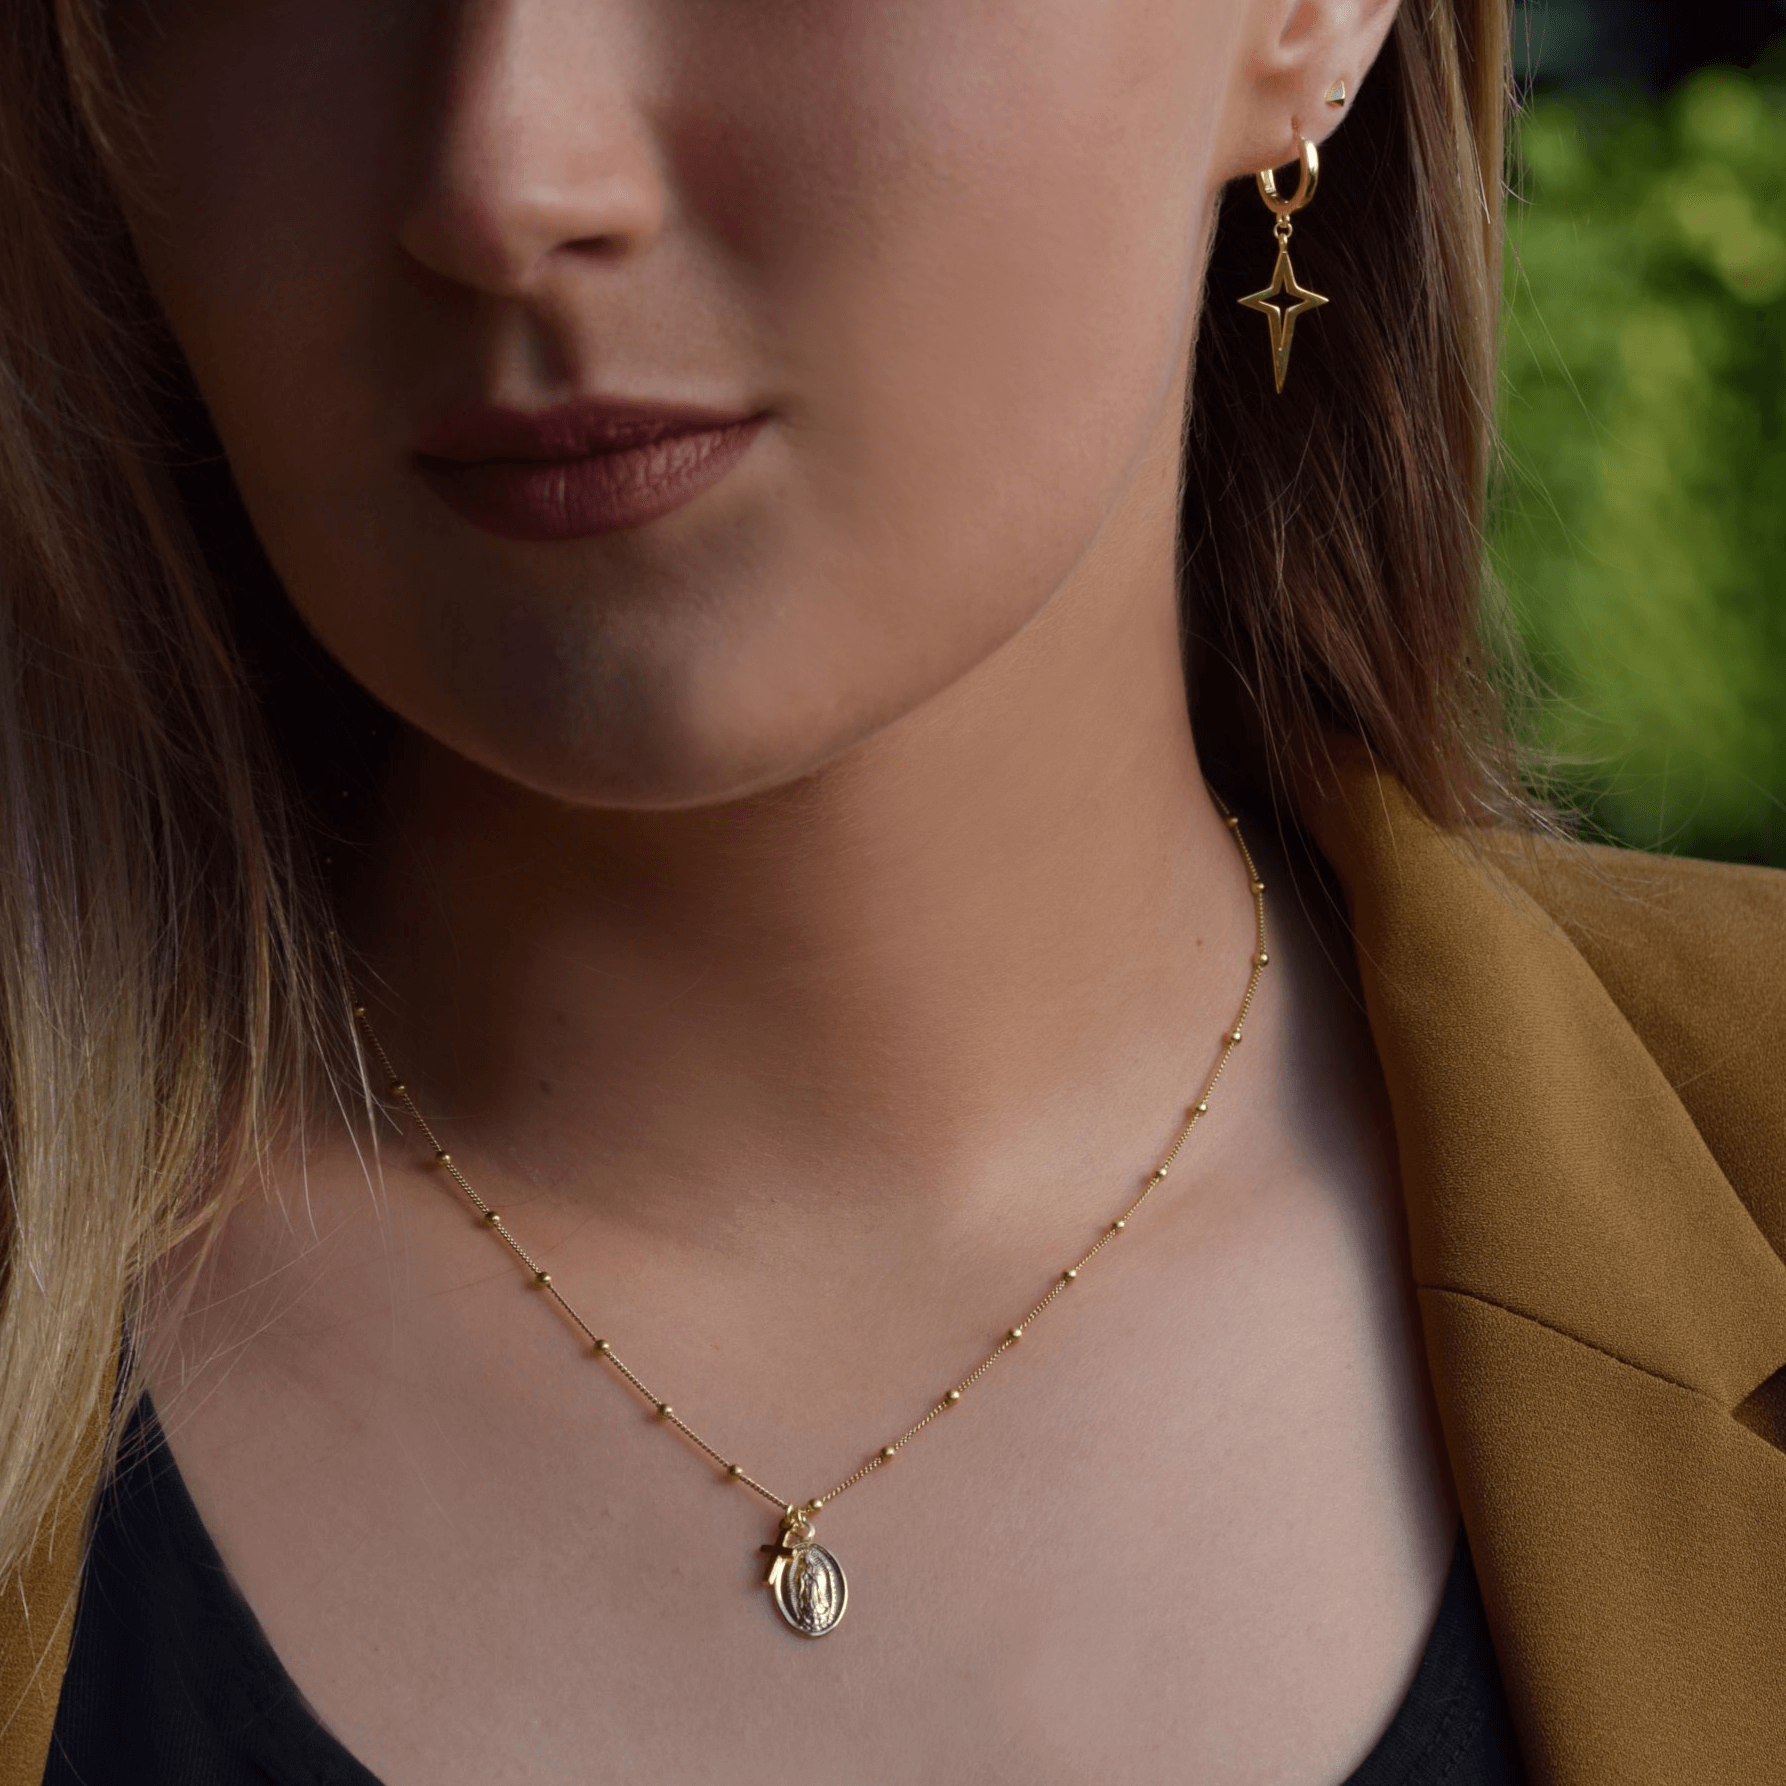 Maria kette | 925er silber und vergoldet Halskette